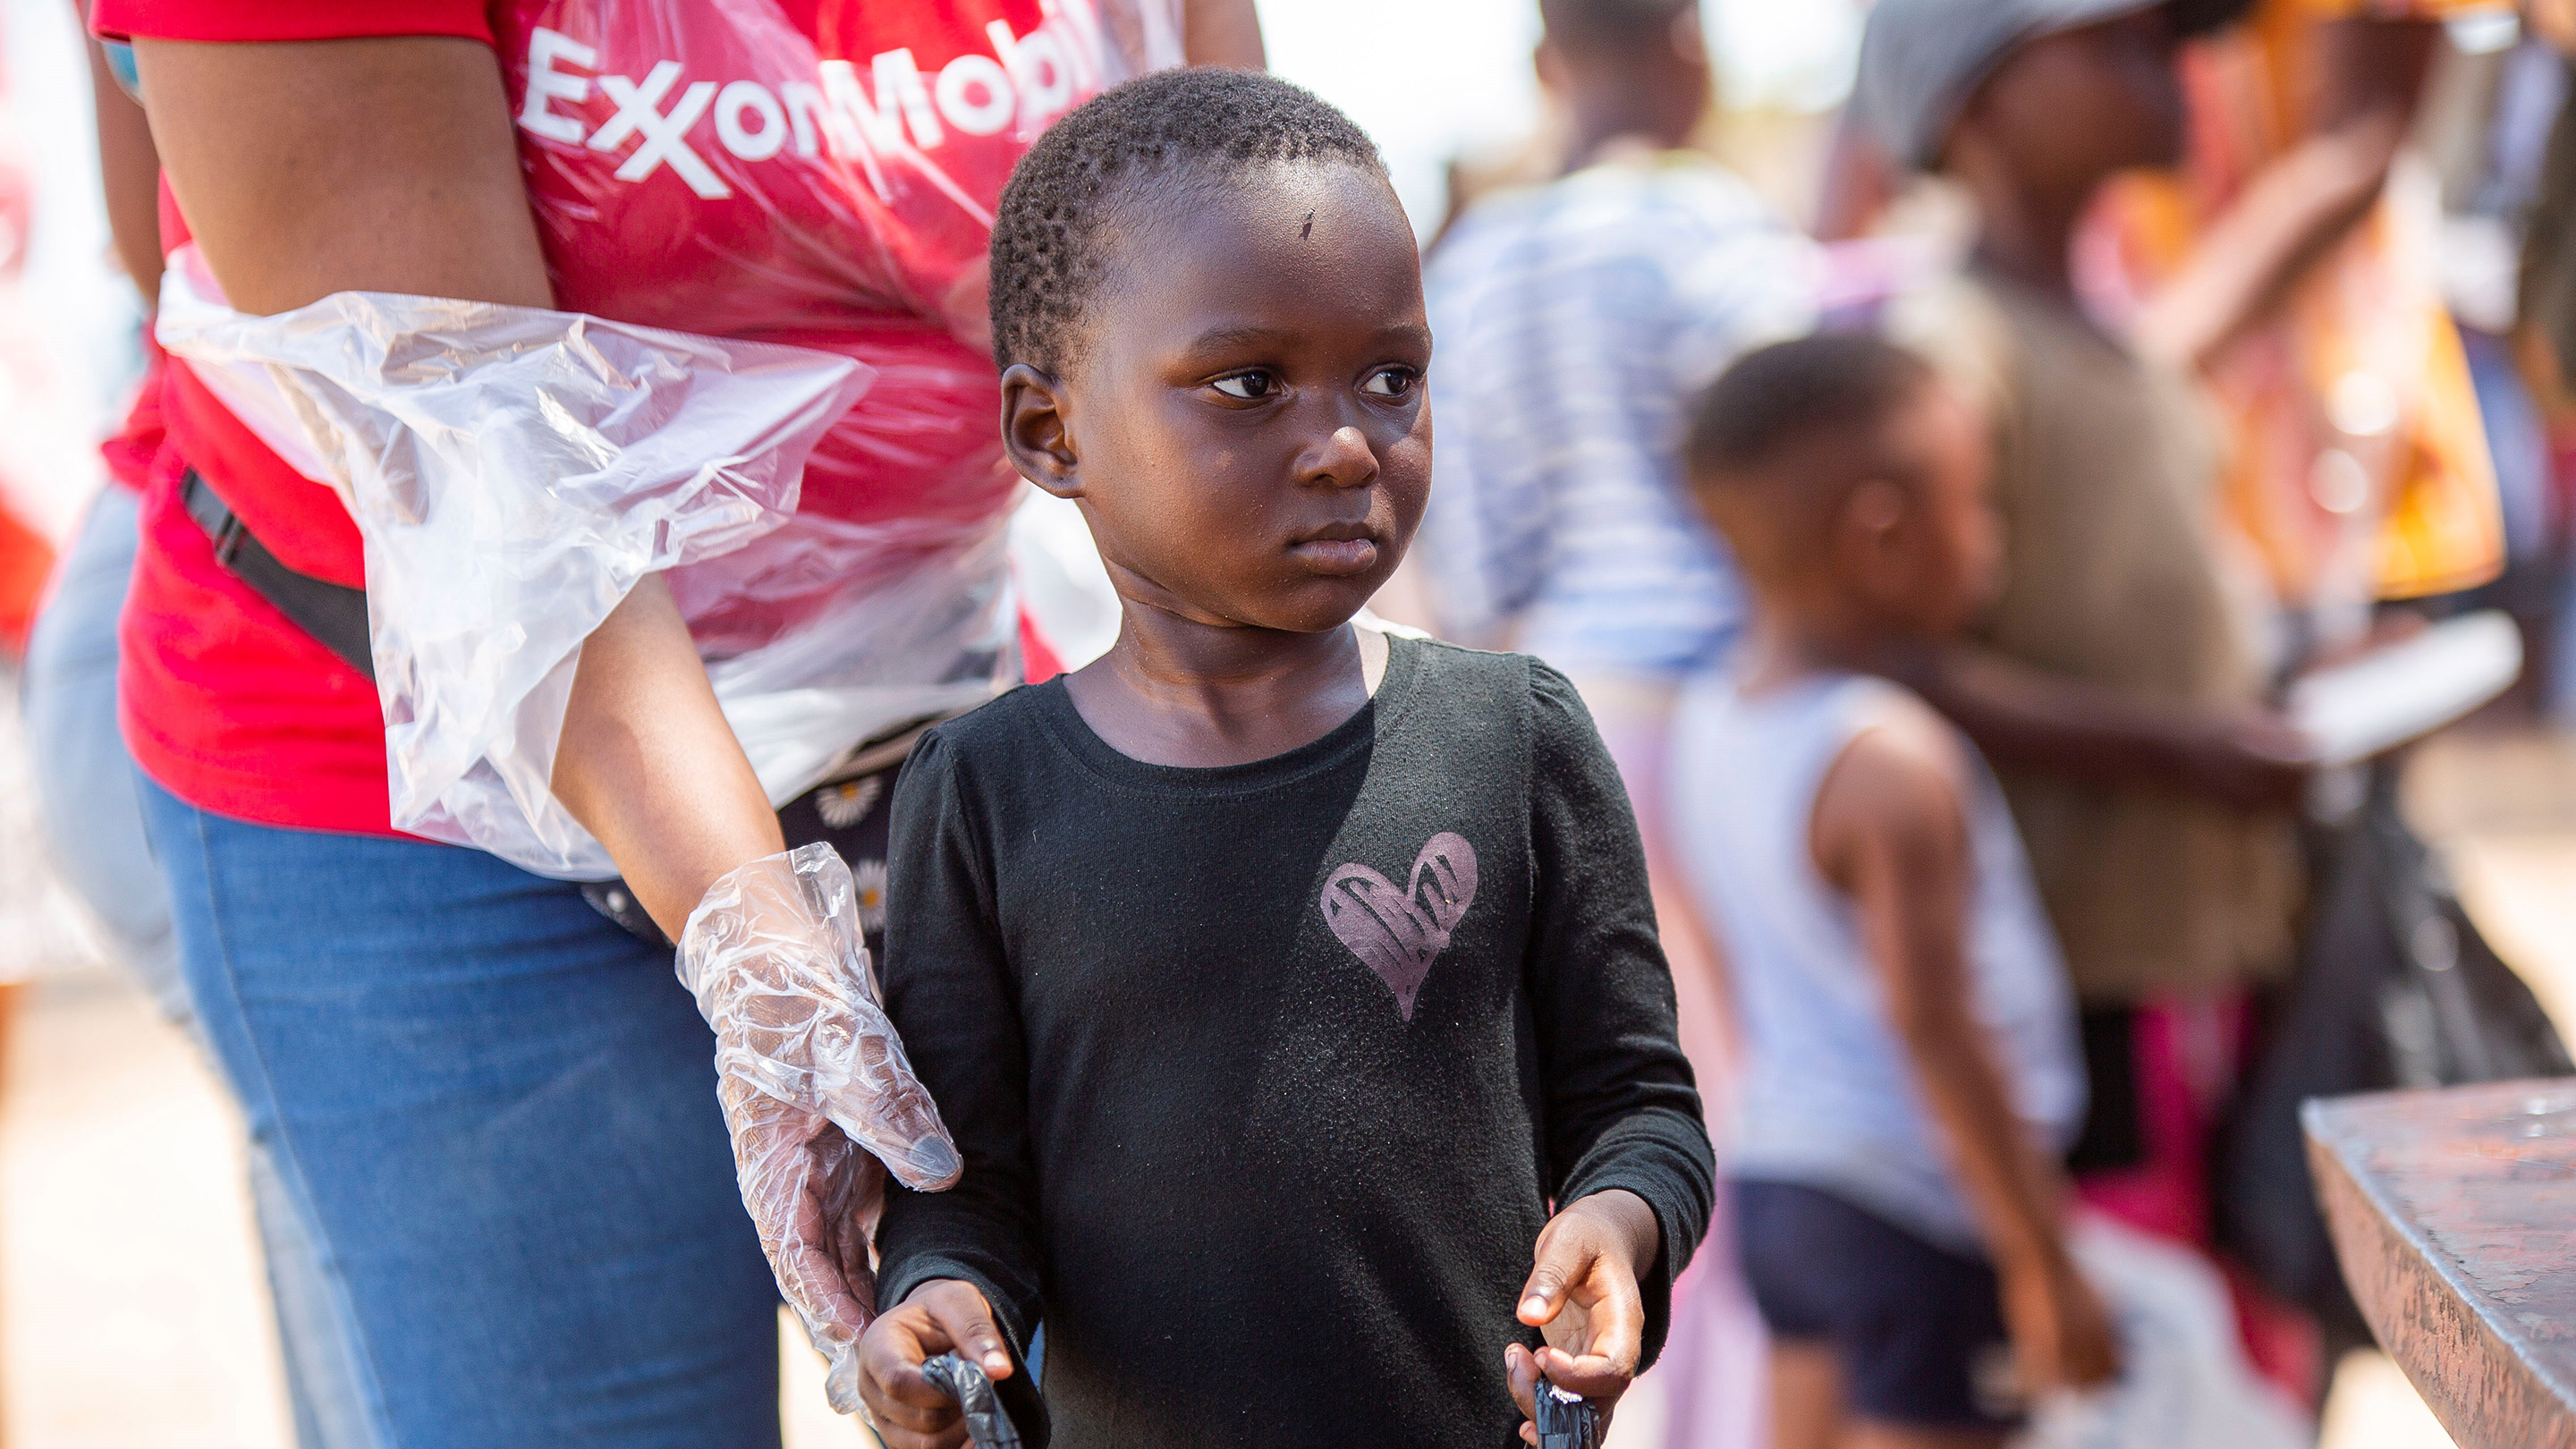 Os voluntários da ExxonMobil cozinharam e distribuíram refeições nutritivas a mais de 150 crianças no Costa do Sol e também distribuíram roupas e brinquedos.